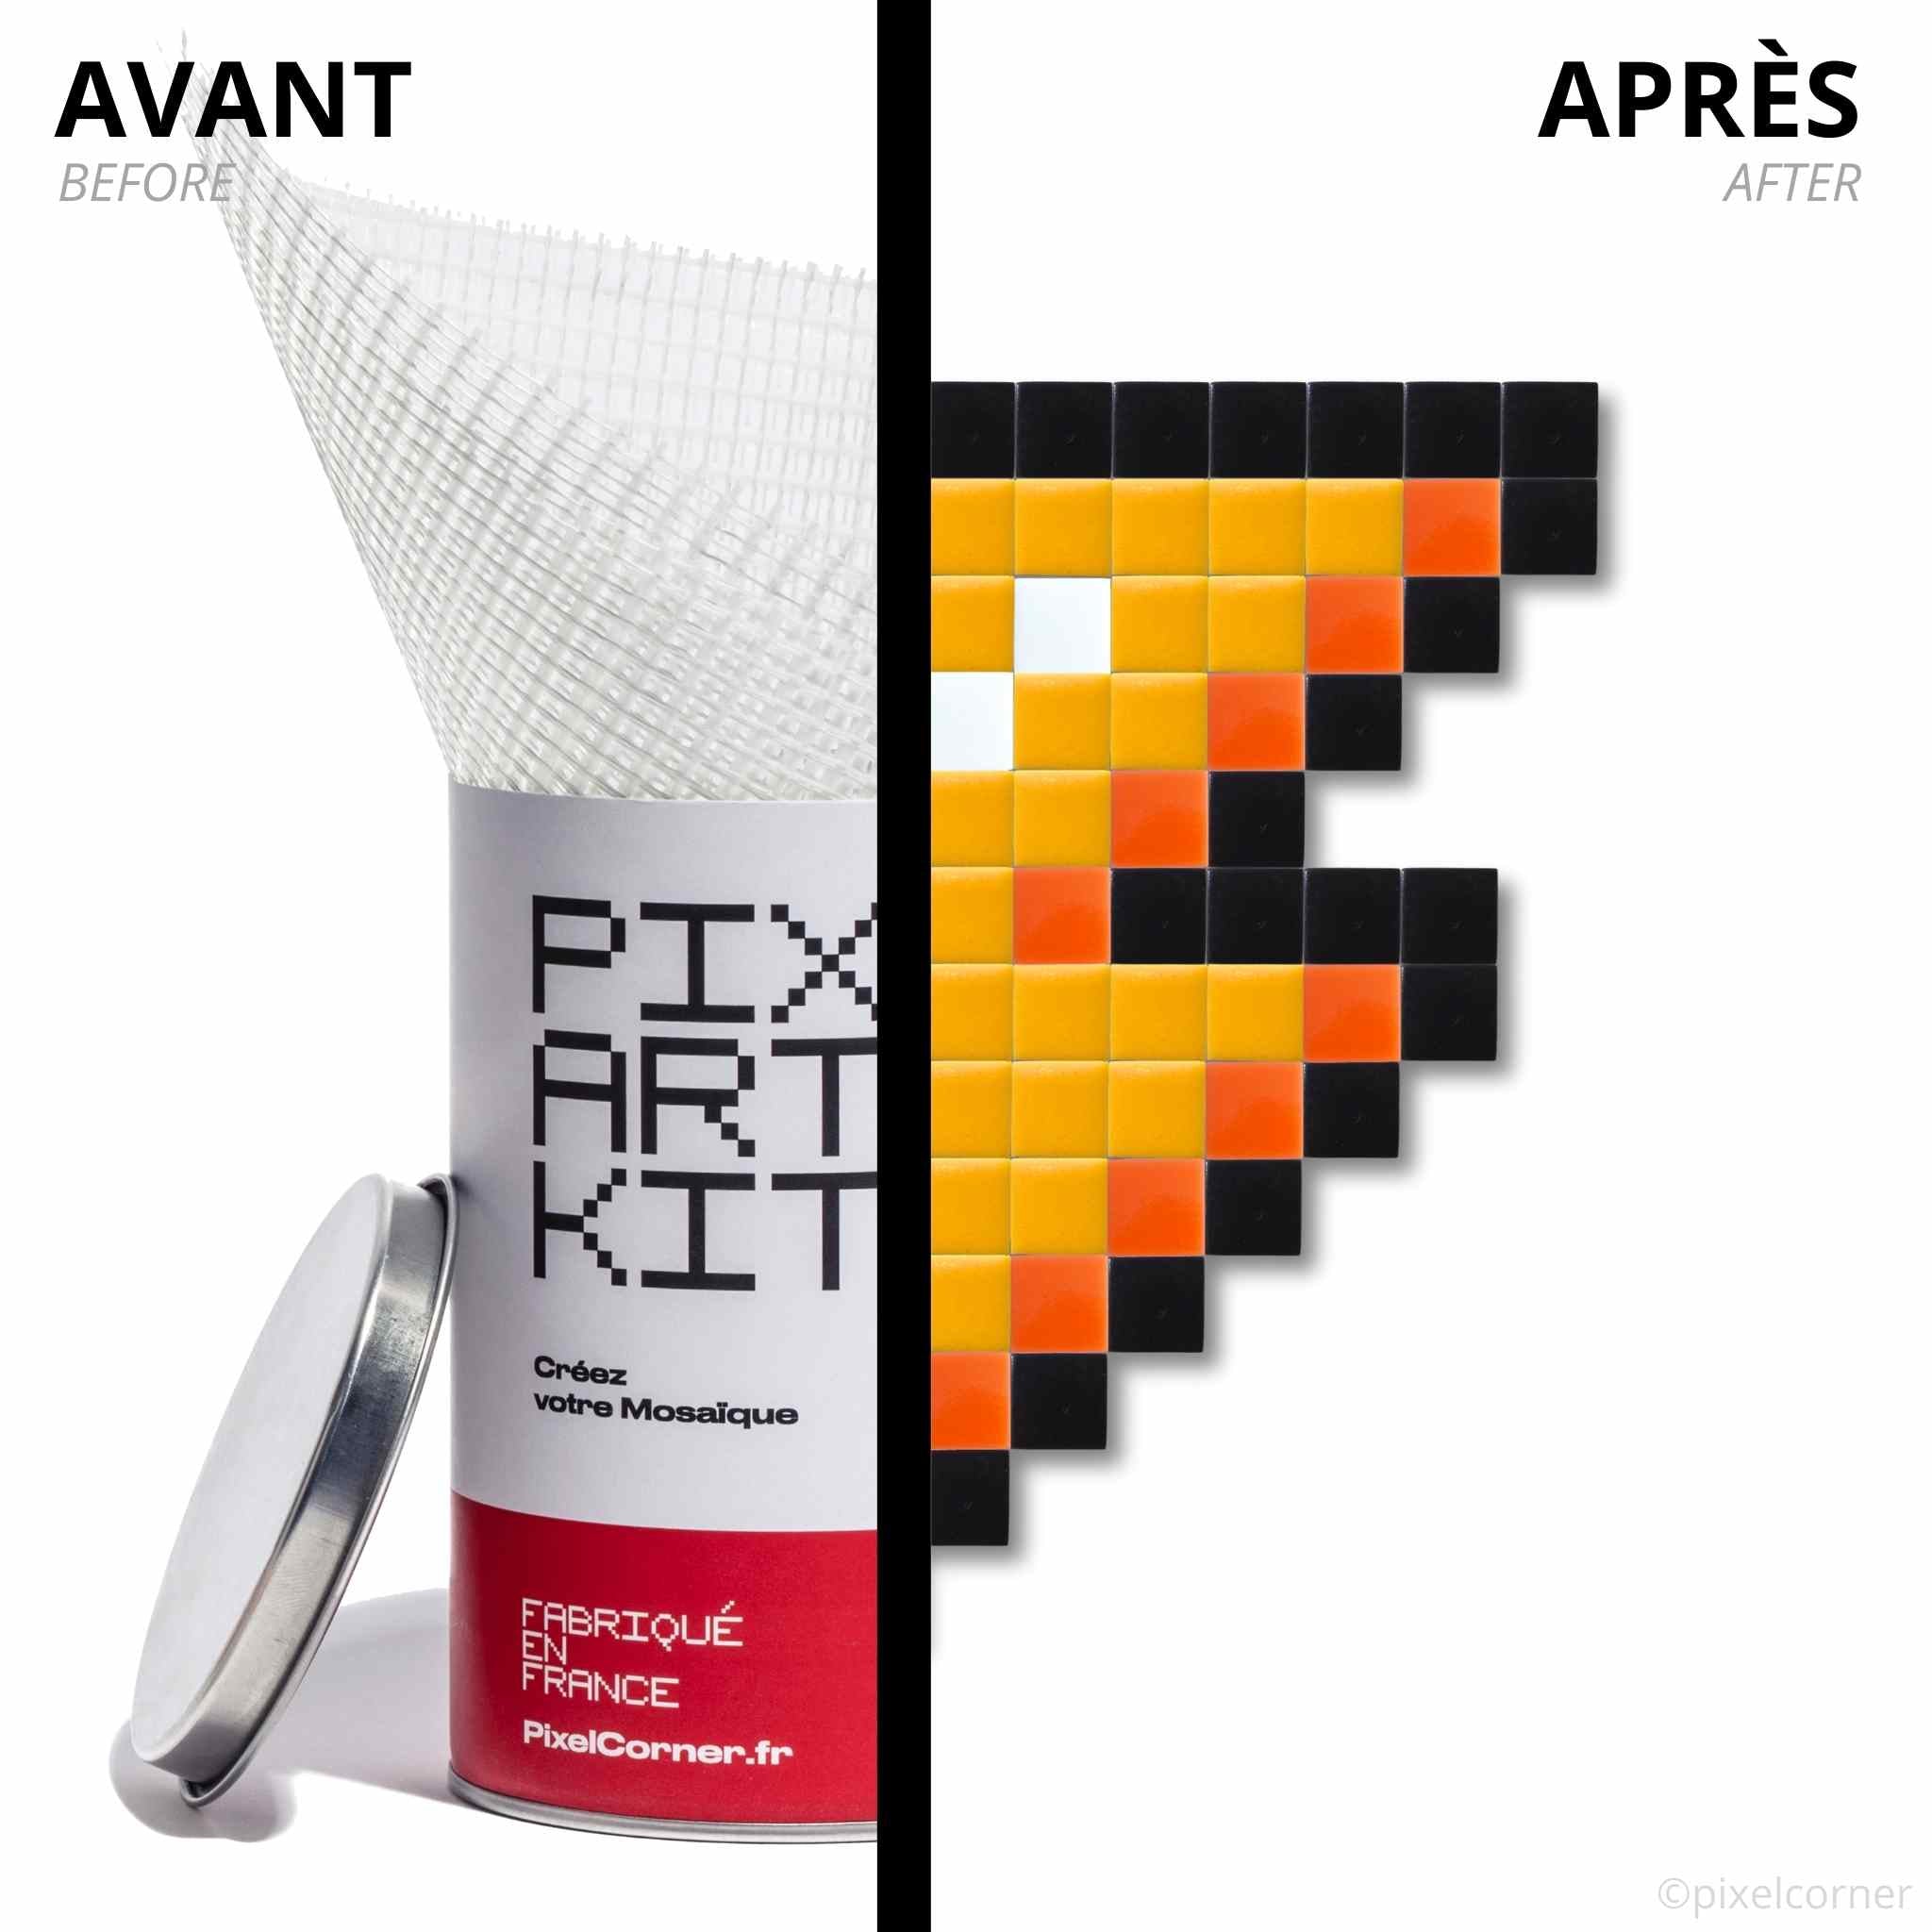 Avant et après réalisation d'un Pixel Art Kit "Bolt" par Pixel Corner - Kits de loisirs créatifs diy artistique et décoratif